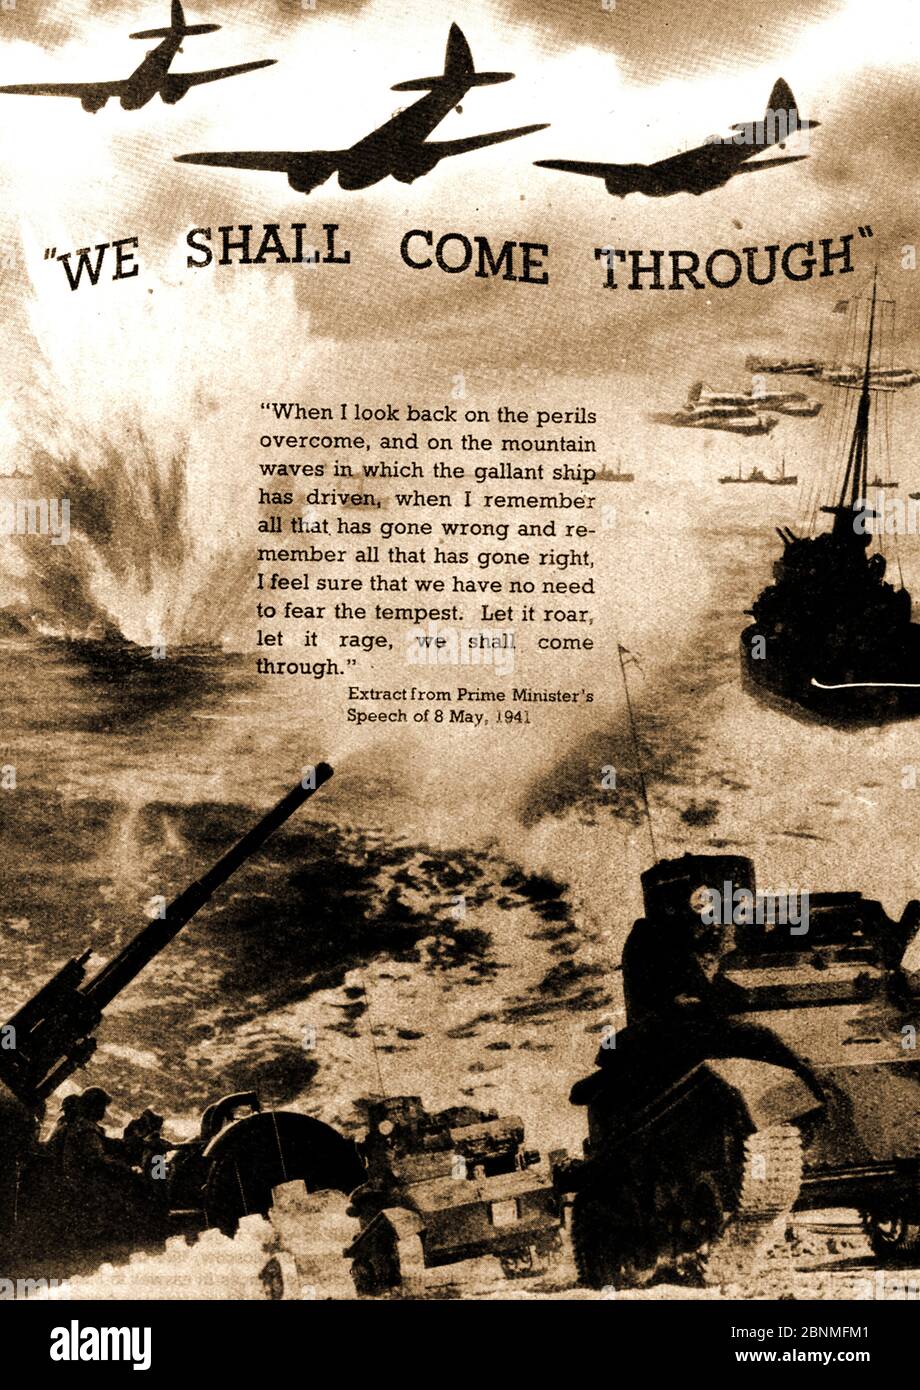 Deuxième Guerre mondiale - UNE image imprimée de 1941 montrant une commémoration picturale du discours de Winston Churchill du 8 mai 1941 - « nous allons passer » Banque D'Images